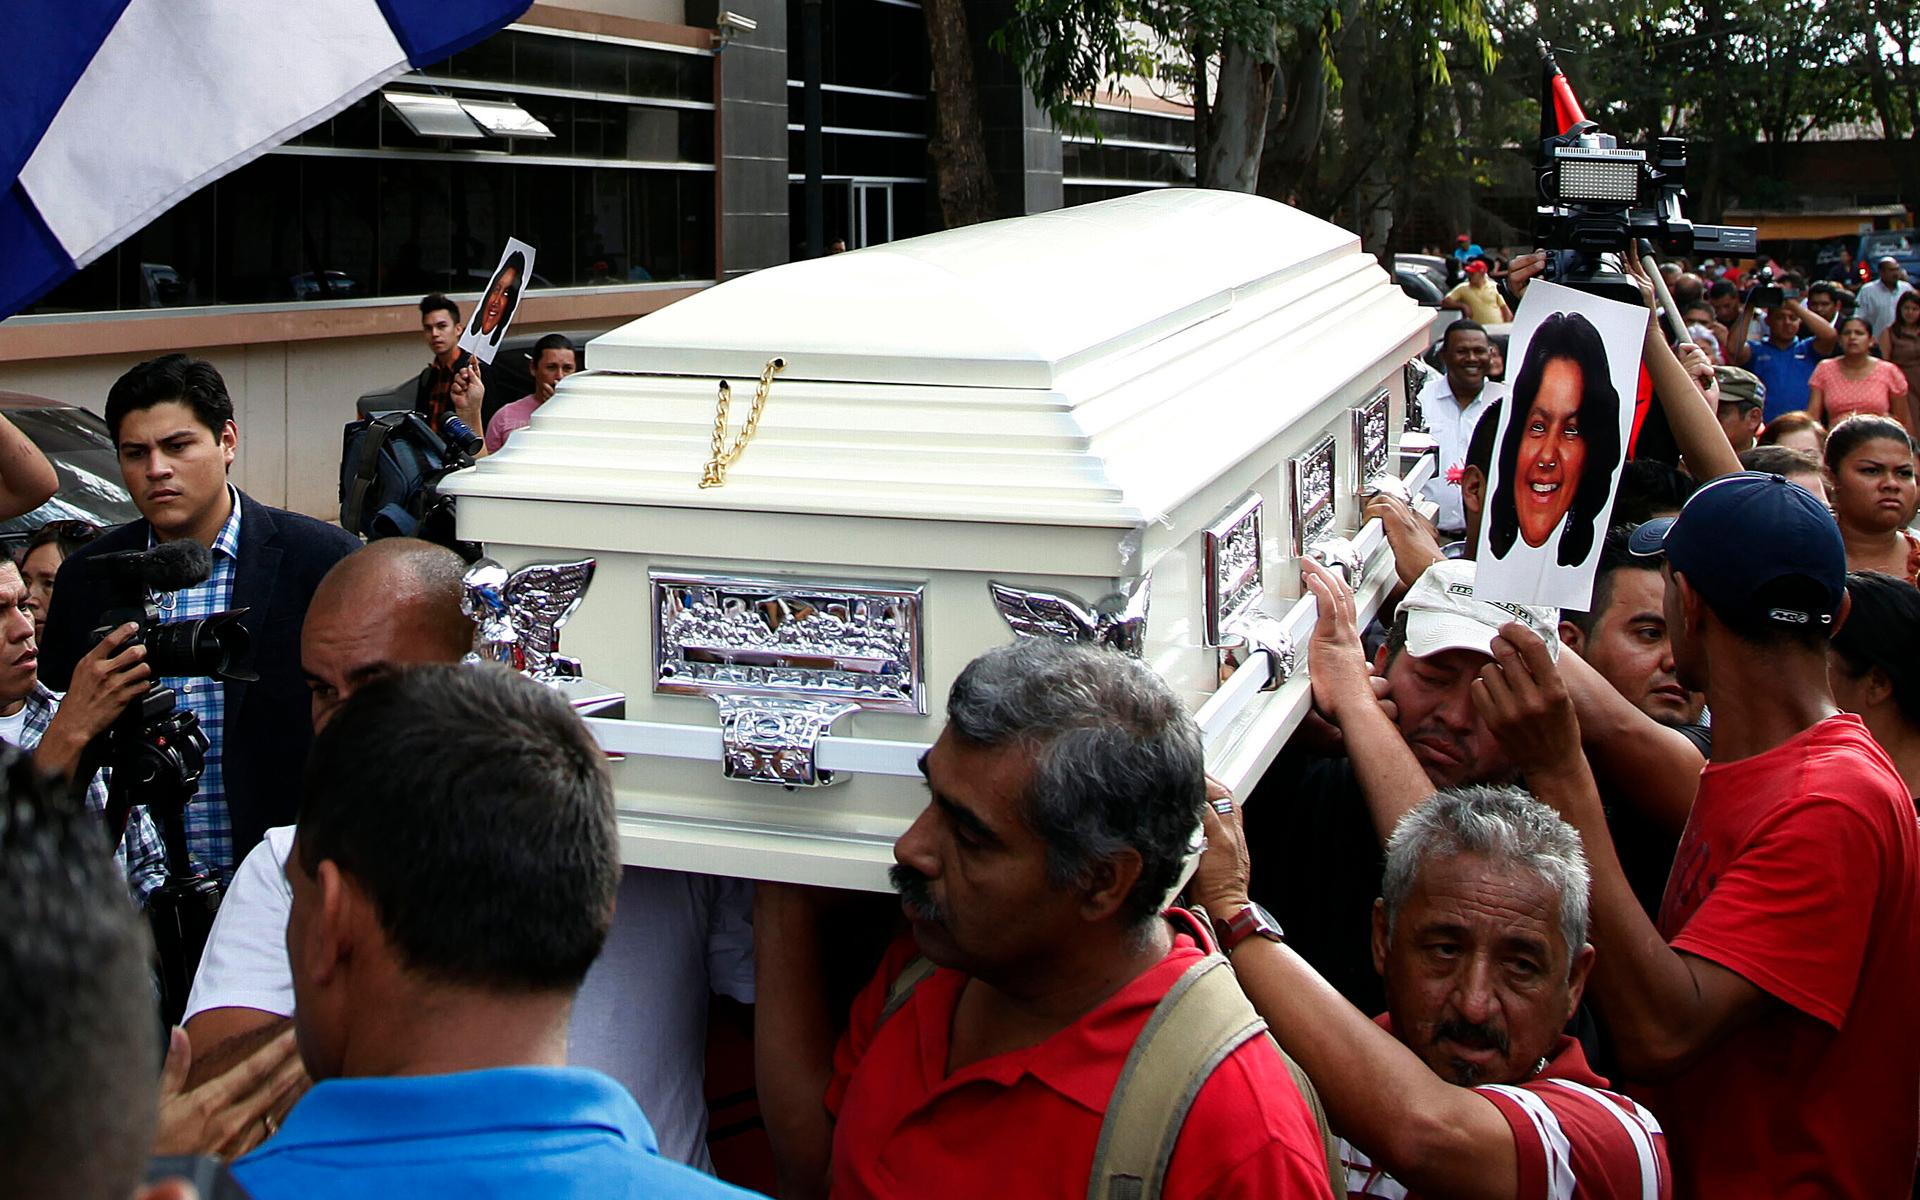 Kistan med Berta Caceres kropp bärs av invånare i Tegucigalpa, Honduras, i mars 2016. Vd:n för ett energibolag i Honduras dömdes i somras för att ha varit en av hjärnorna bakom mordet.